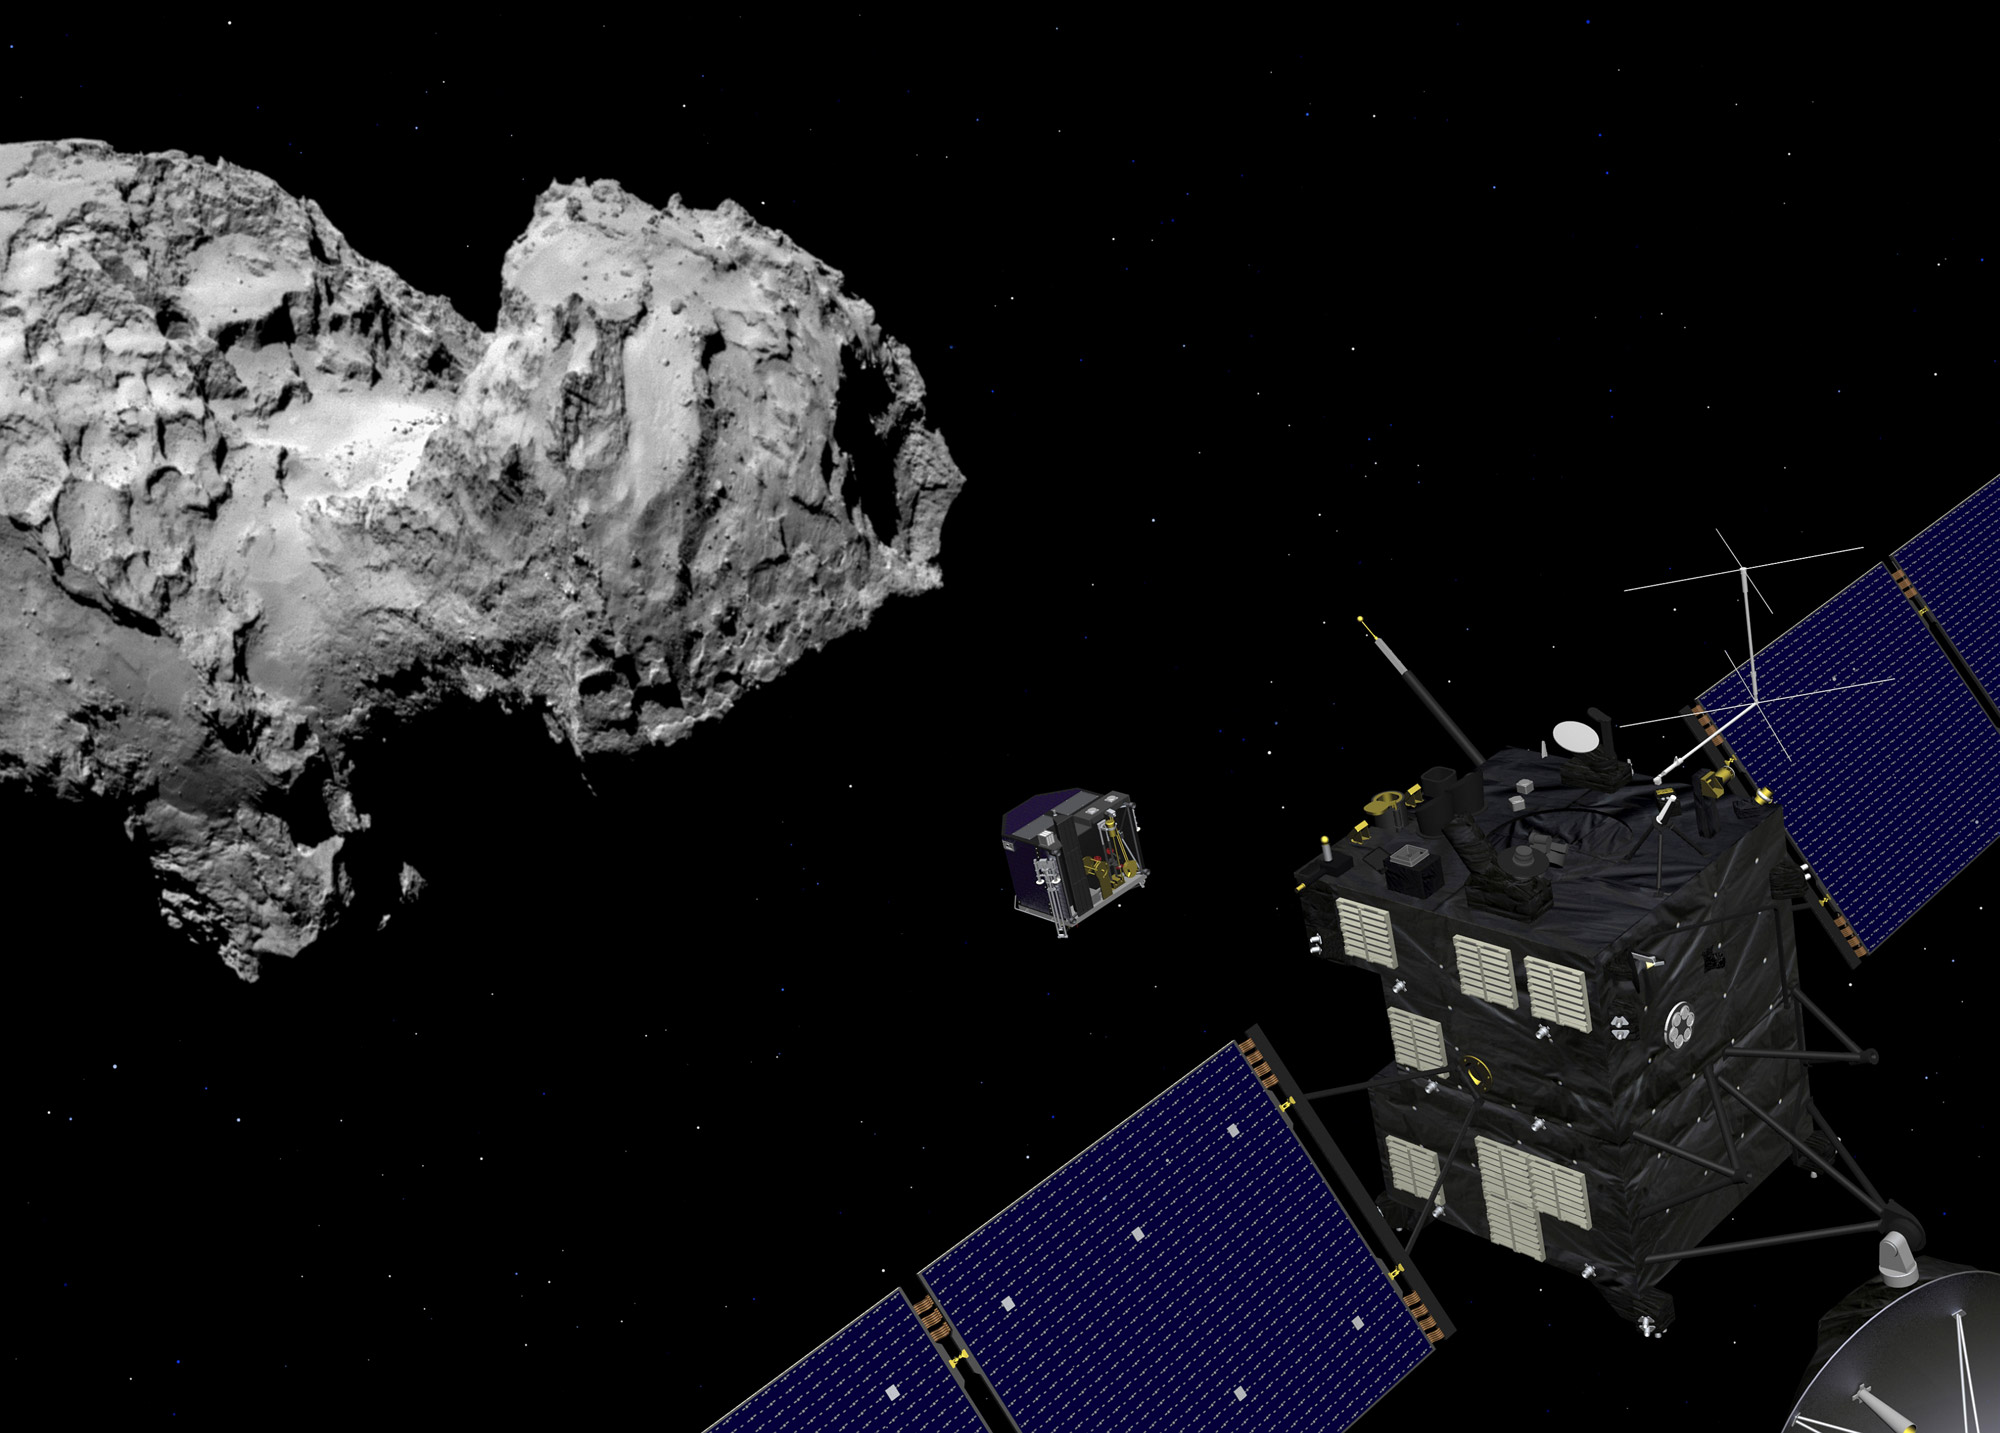 Le dernier pari audacieux de la mission&nbsp;Rosetta est prévu le 30 septembre 2016. Alors que la sonde n'a pas été conçue pour cela, elle tentera de&nbsp;se poser sur la comète Churyumov-Gerasimenko au terme d'une mission qui aura duré plus de 12 ans.&nbsp;© Esa, J. Huart, 2014 ; image comète : Esa, Rosetta, MPS for Osiris Team MPS